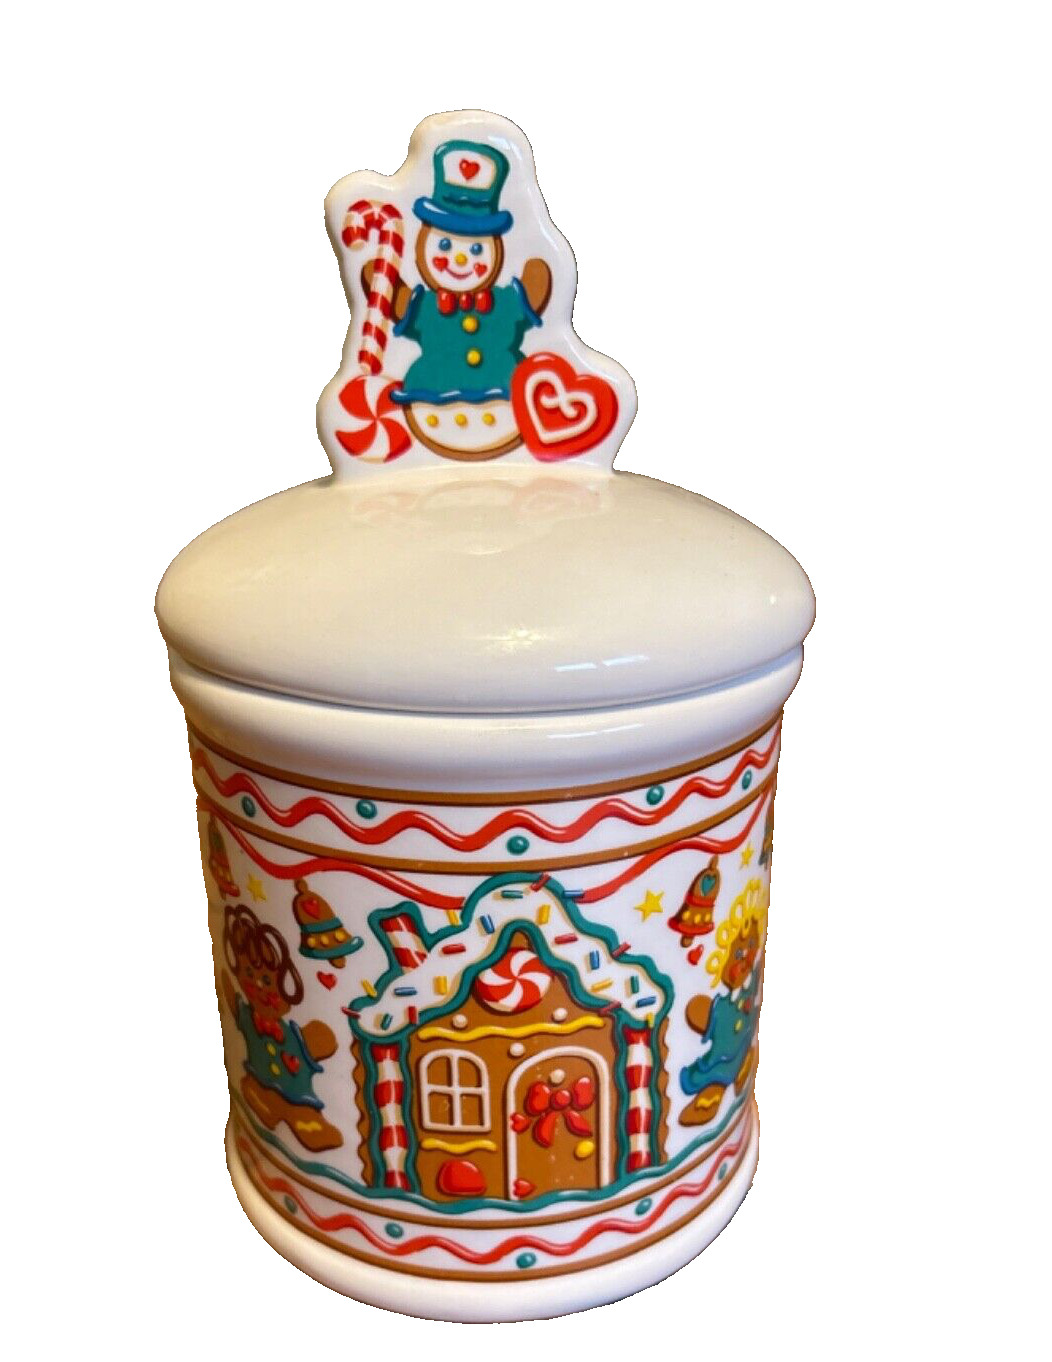 Vintage Cookie Jar  by Teleflora Gingerbread Man Christmas